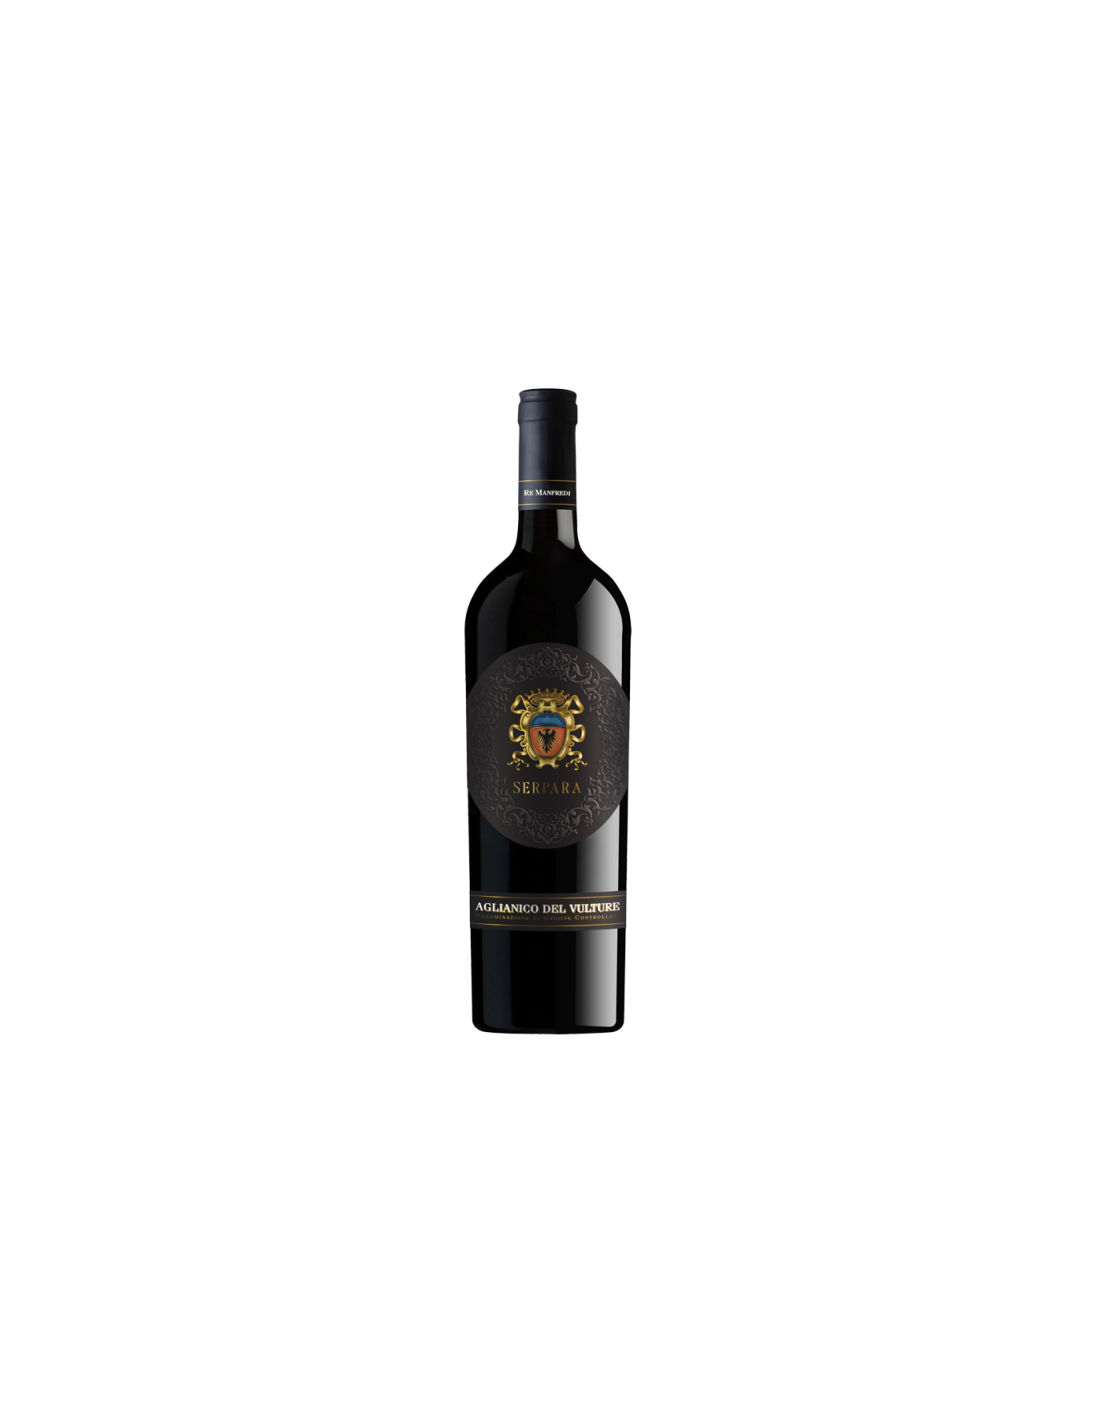 Vin rosu sec, Aglianico, Serpara Vulture, 14.5% alc., 0.75L, Italia alcooldiscount.ro